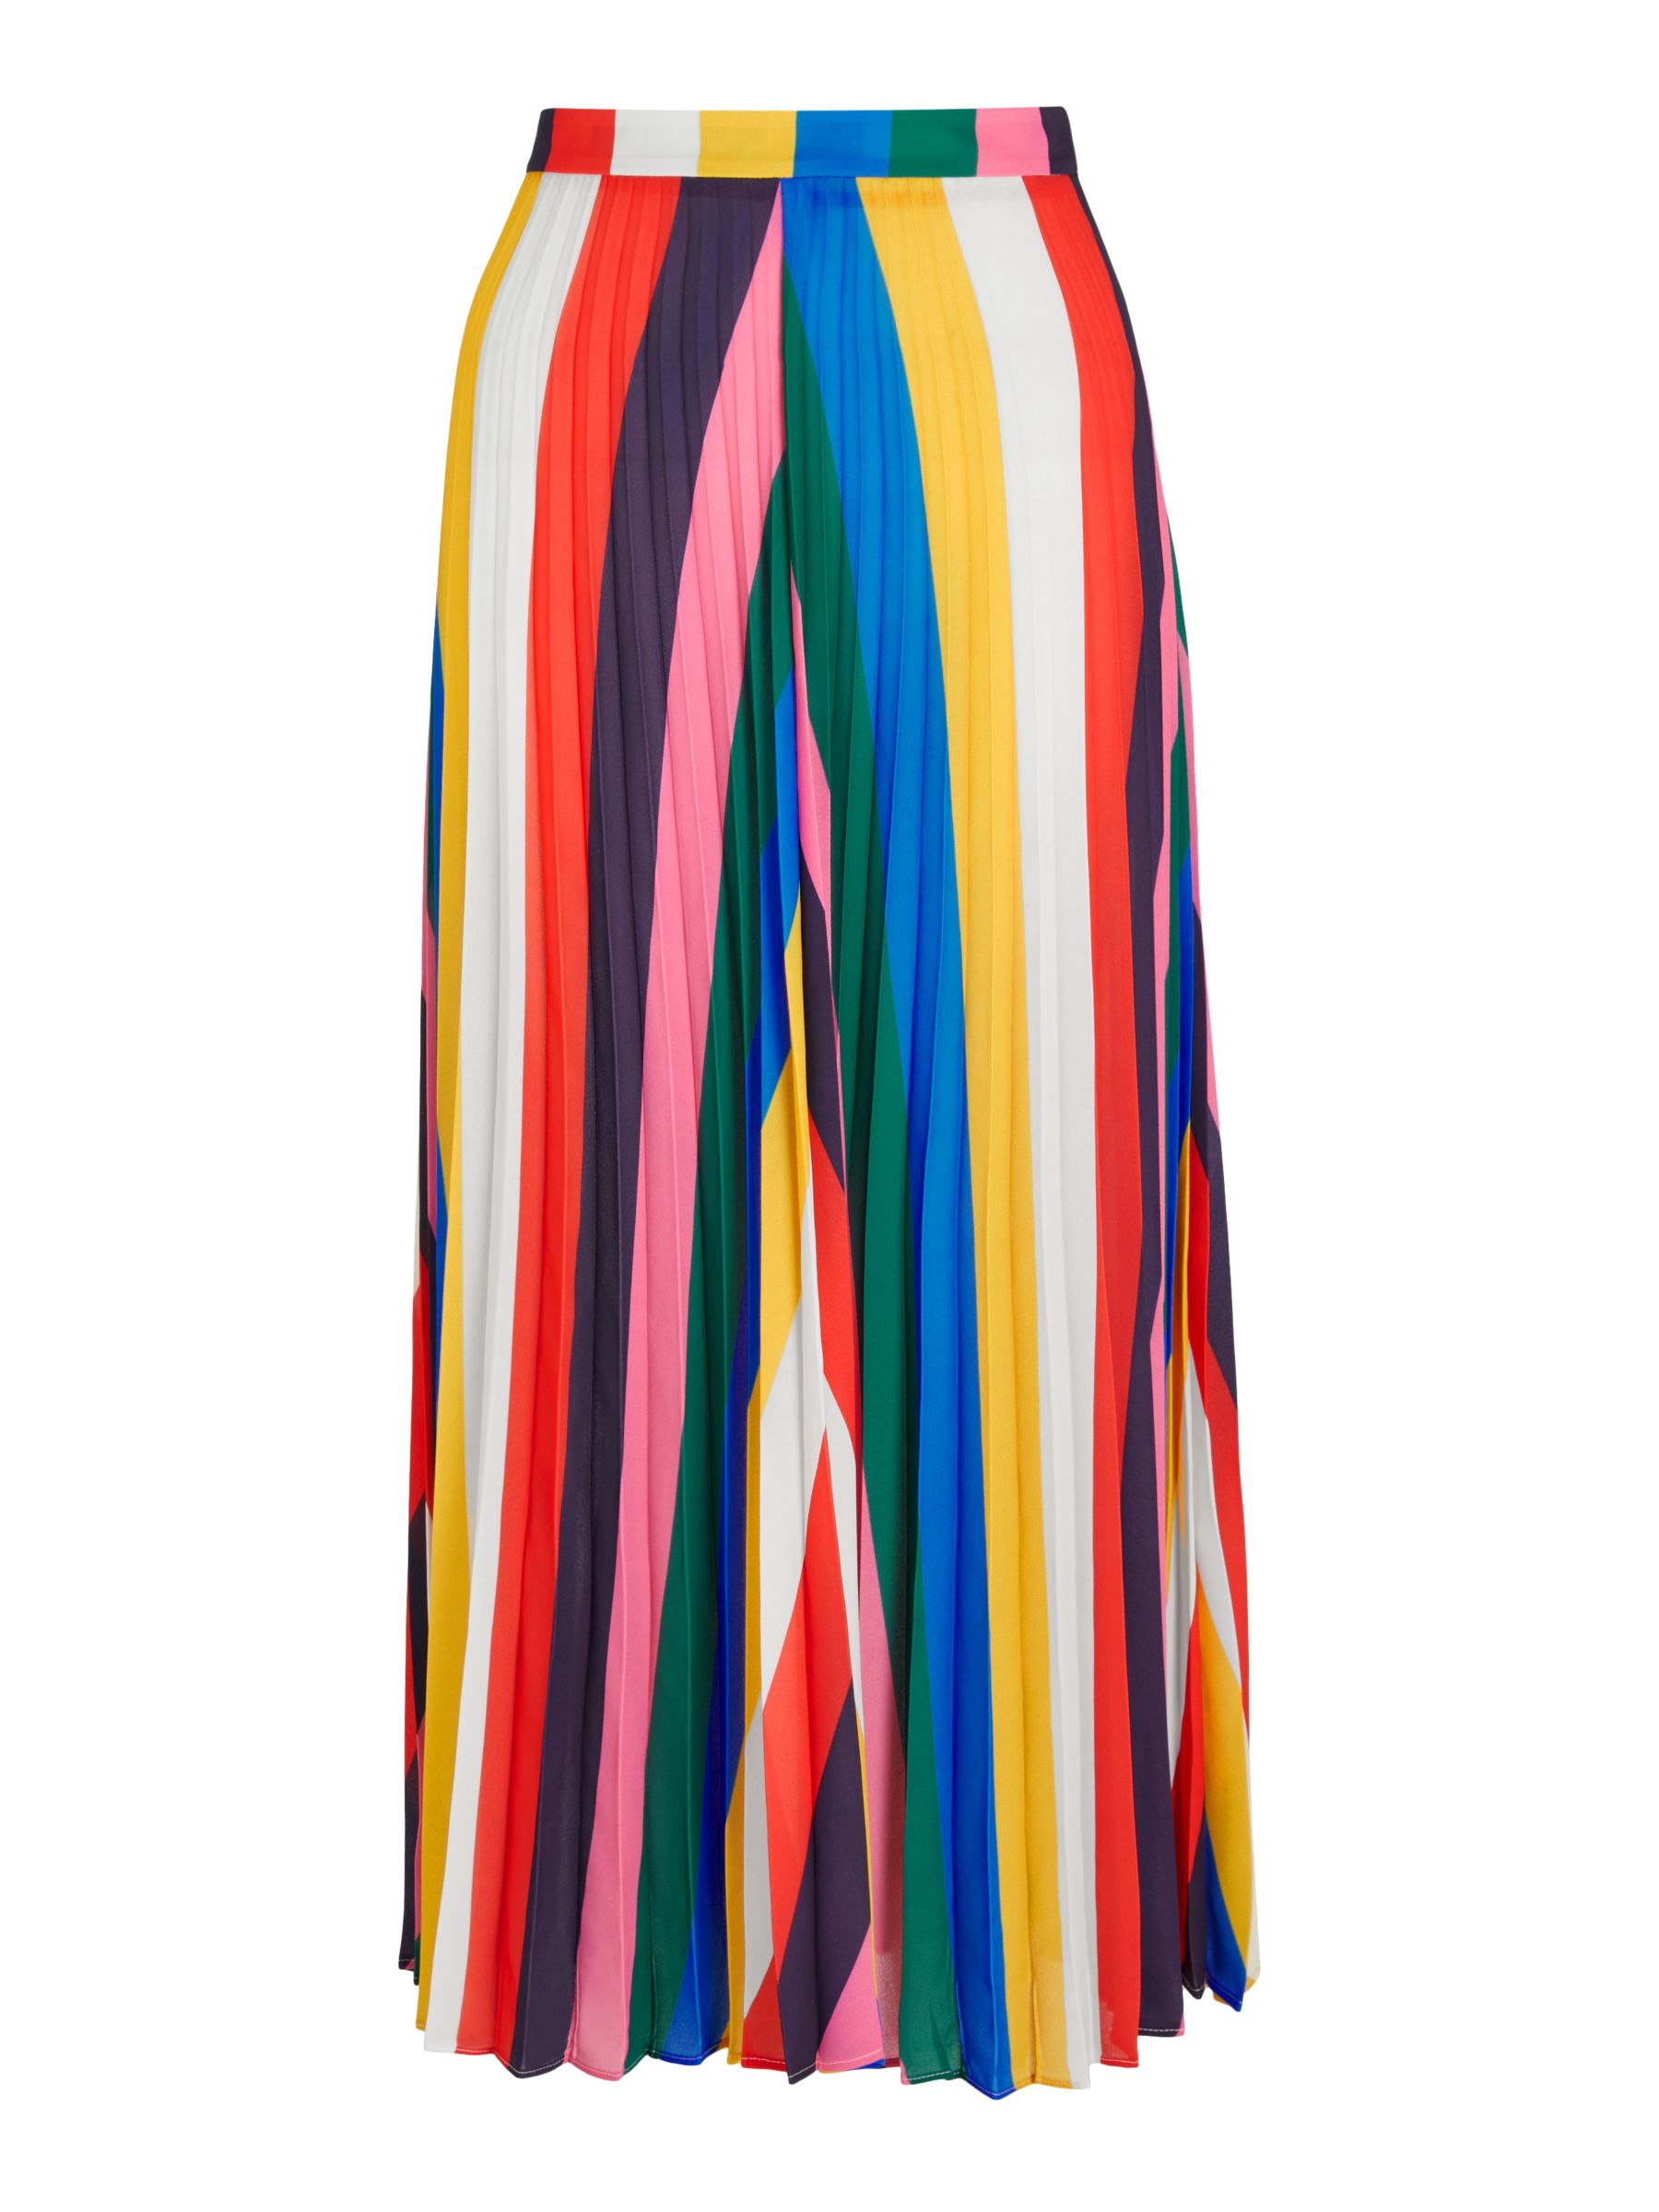 Boden Fairfax Pleated Skirt, Rainbow